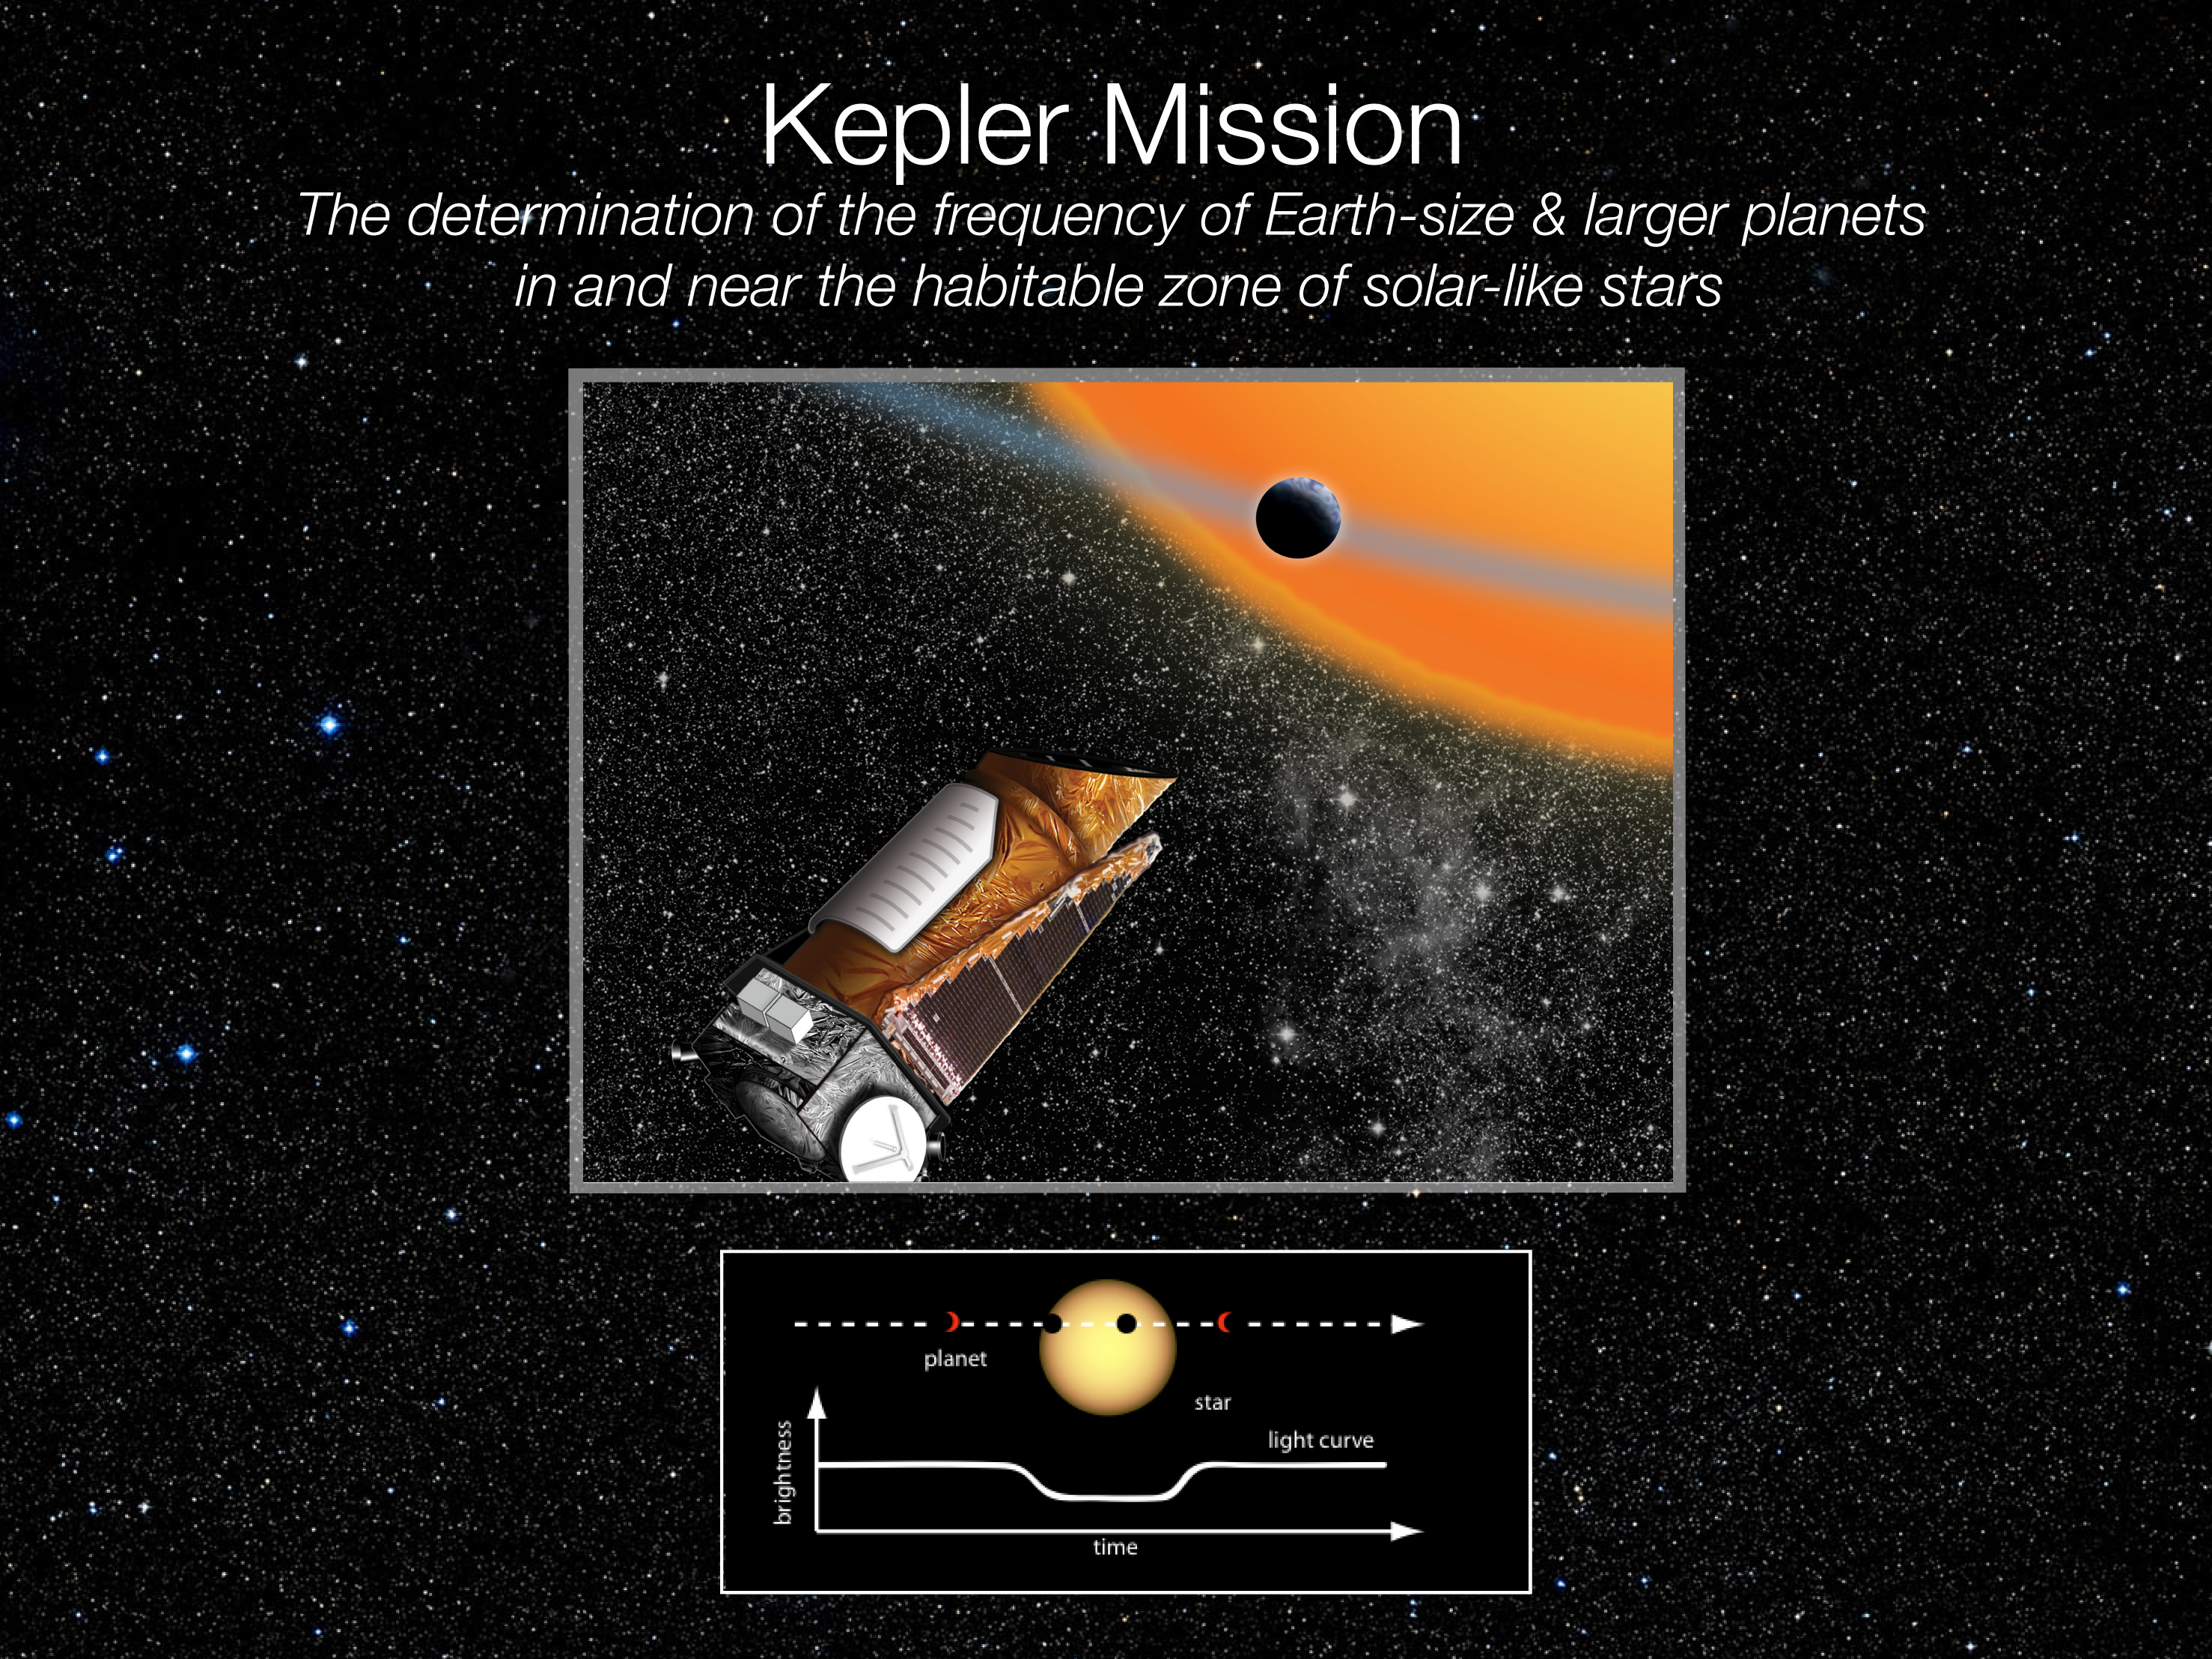 Une vue d'artiste de Kepler observant un transit planétaire. Son héritage est bien vivant comme le prouvent la découverte et l'étude récente de deux exoplanètes rocheuses avec des périodes orbitales inférieures à 10 heures. D'autres surprises nous attendent encore dans les archives de Kepler, même si désormais il ne peut plus chasser les exoplanètes. © Nasa